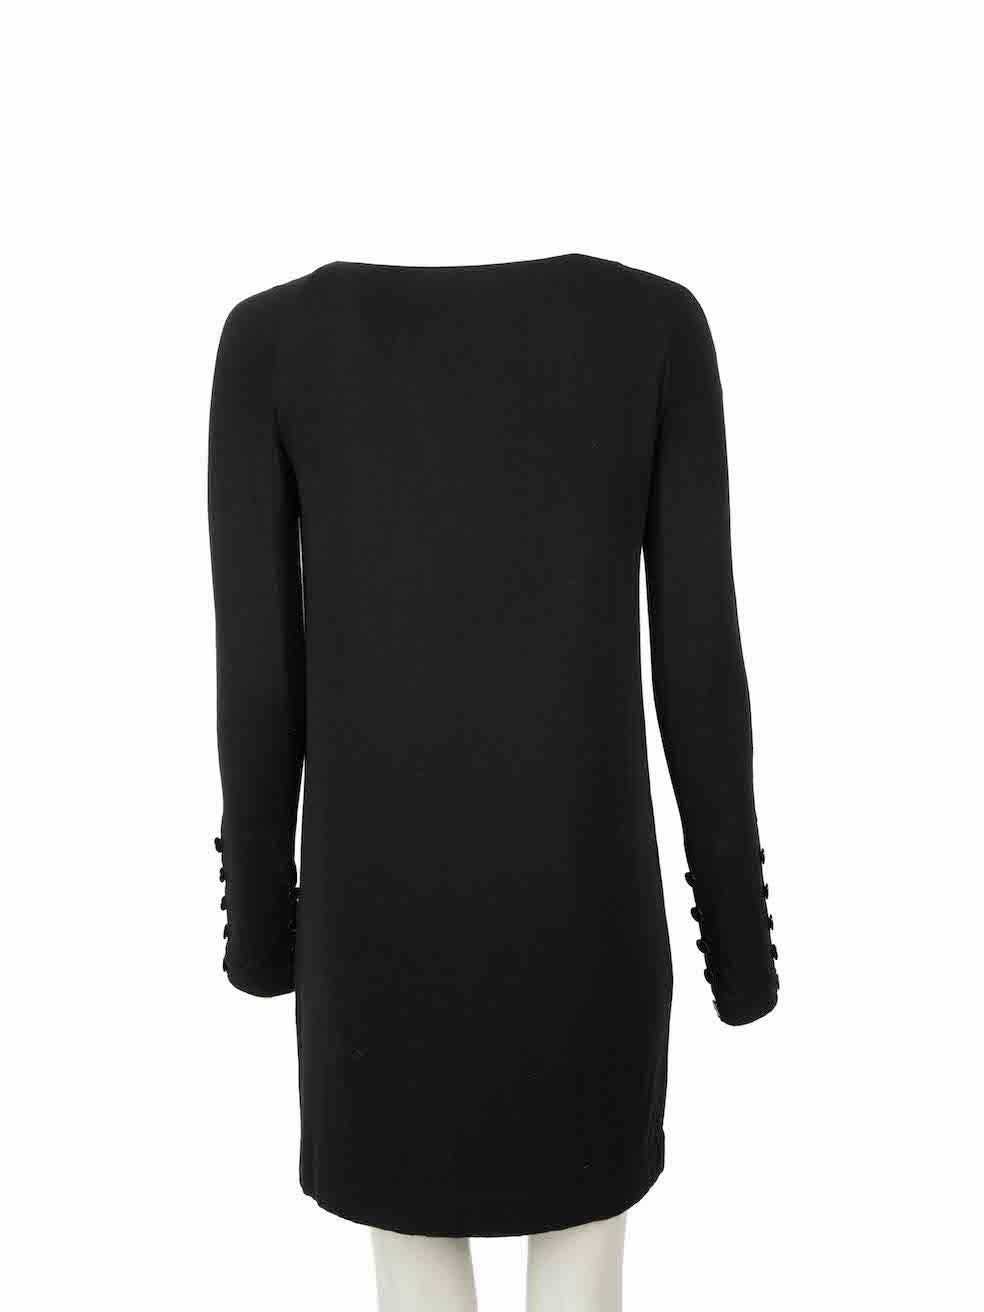 Jasmine Di Milo Black Buttoned Mini Dress Size S In Excellent Condition For Sale In London, GB